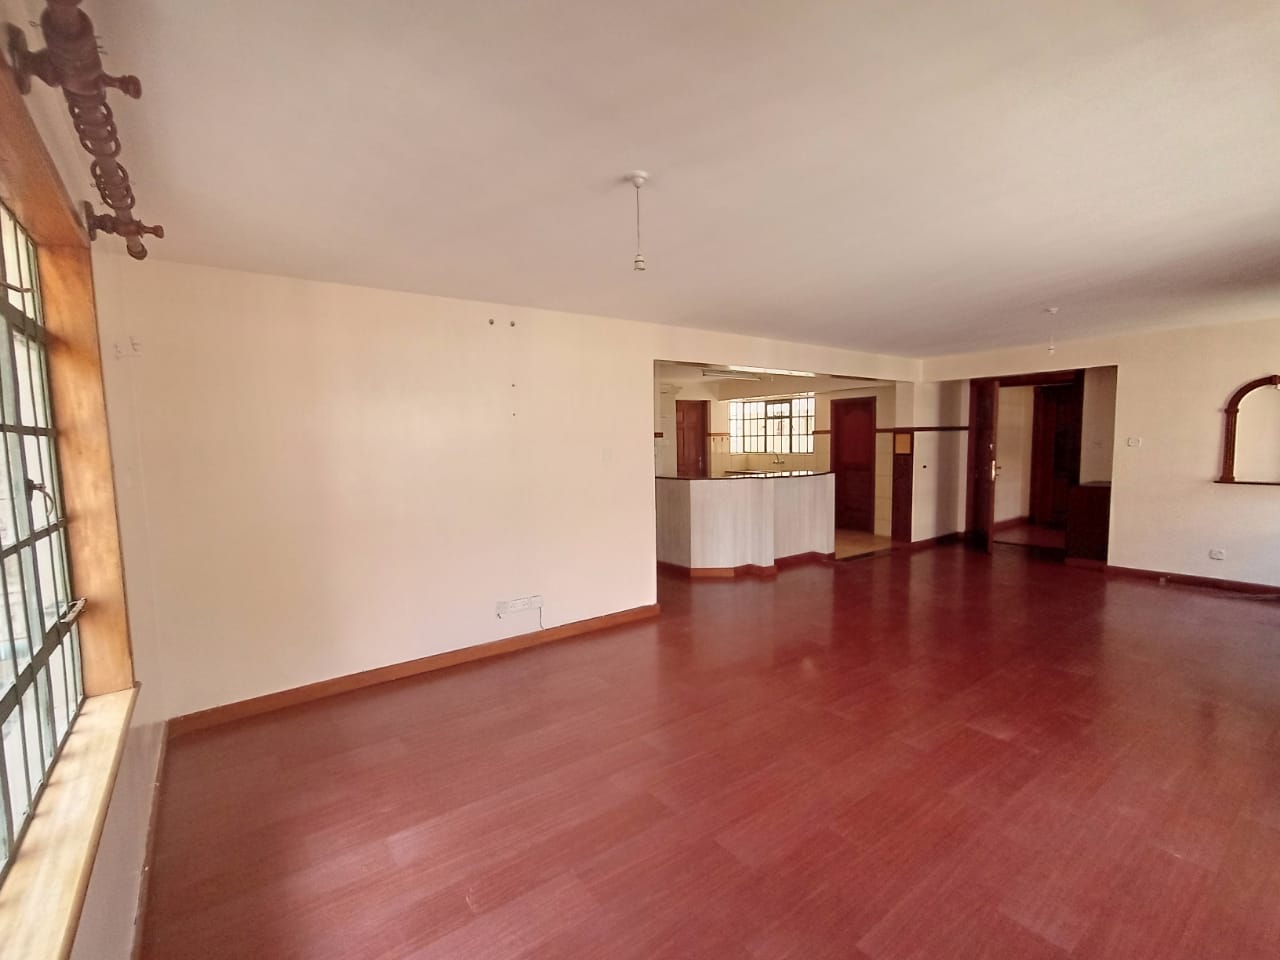 Hot Deal - 3 Bedroom Apartment for Rent in Kileleshwa, Githunguri Road for Ksh70k:Month6